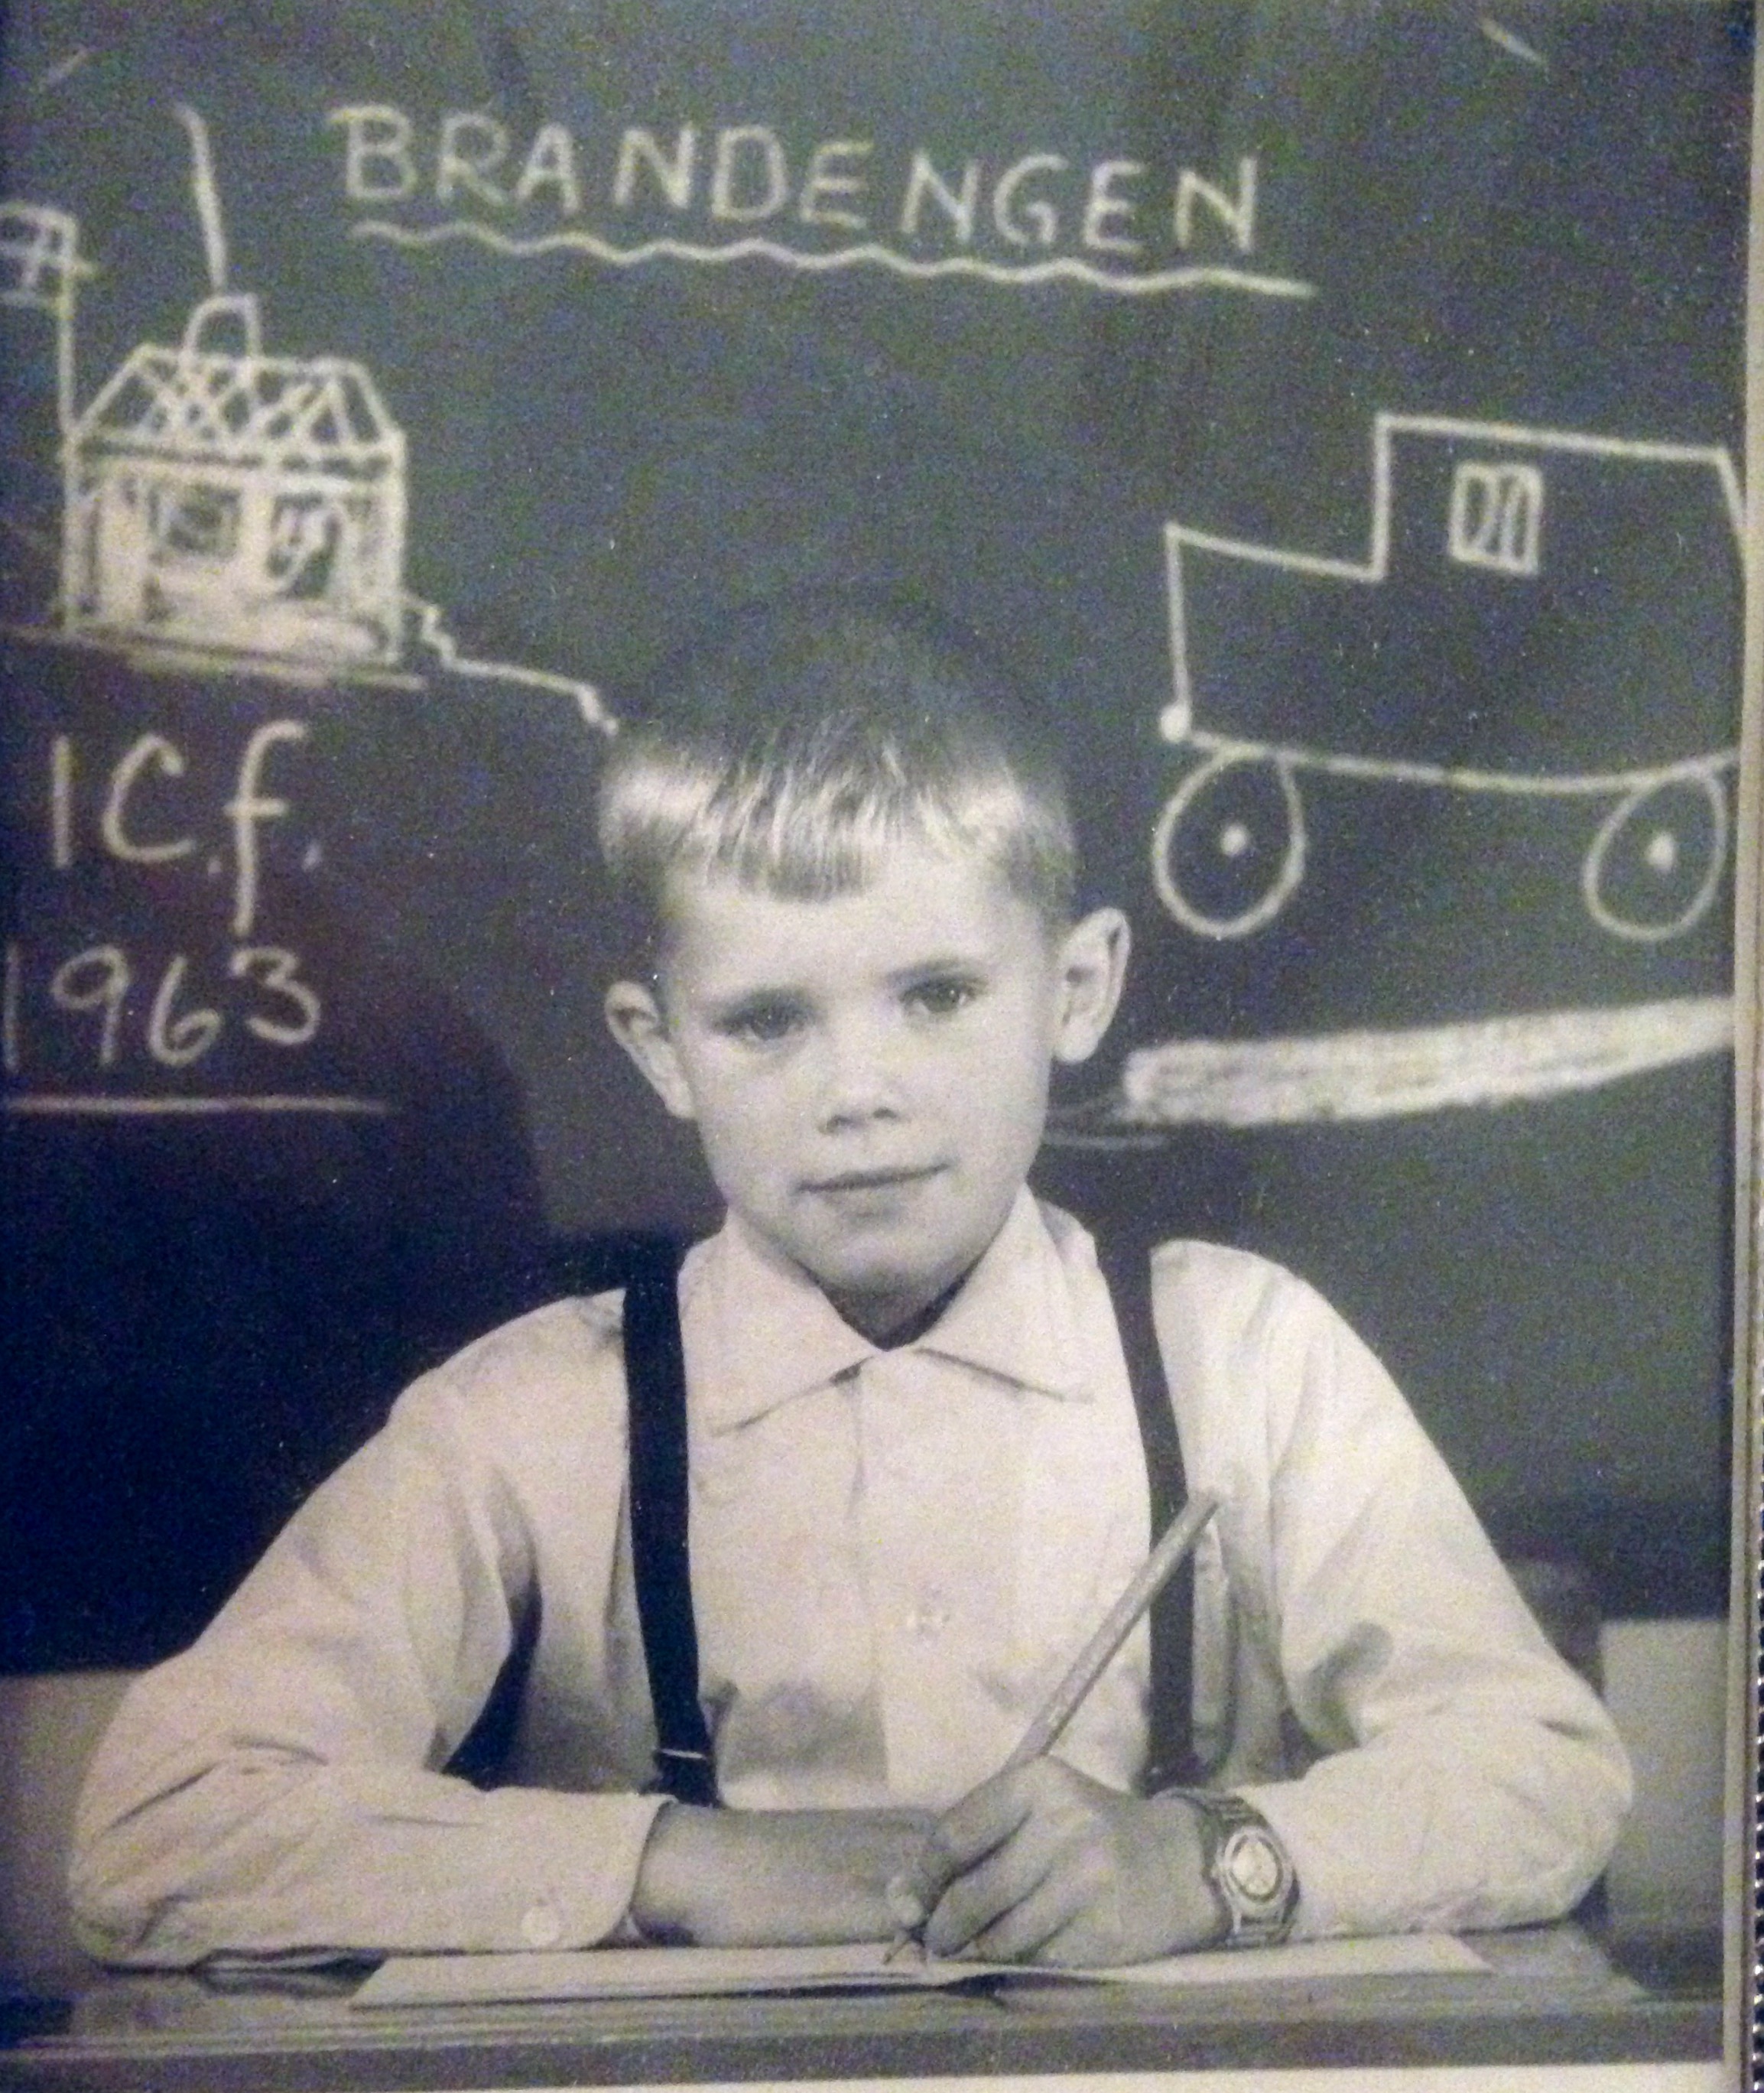 Første skoledag for Tor Knutsen, august 1963 på Brandengen skole, Drammen